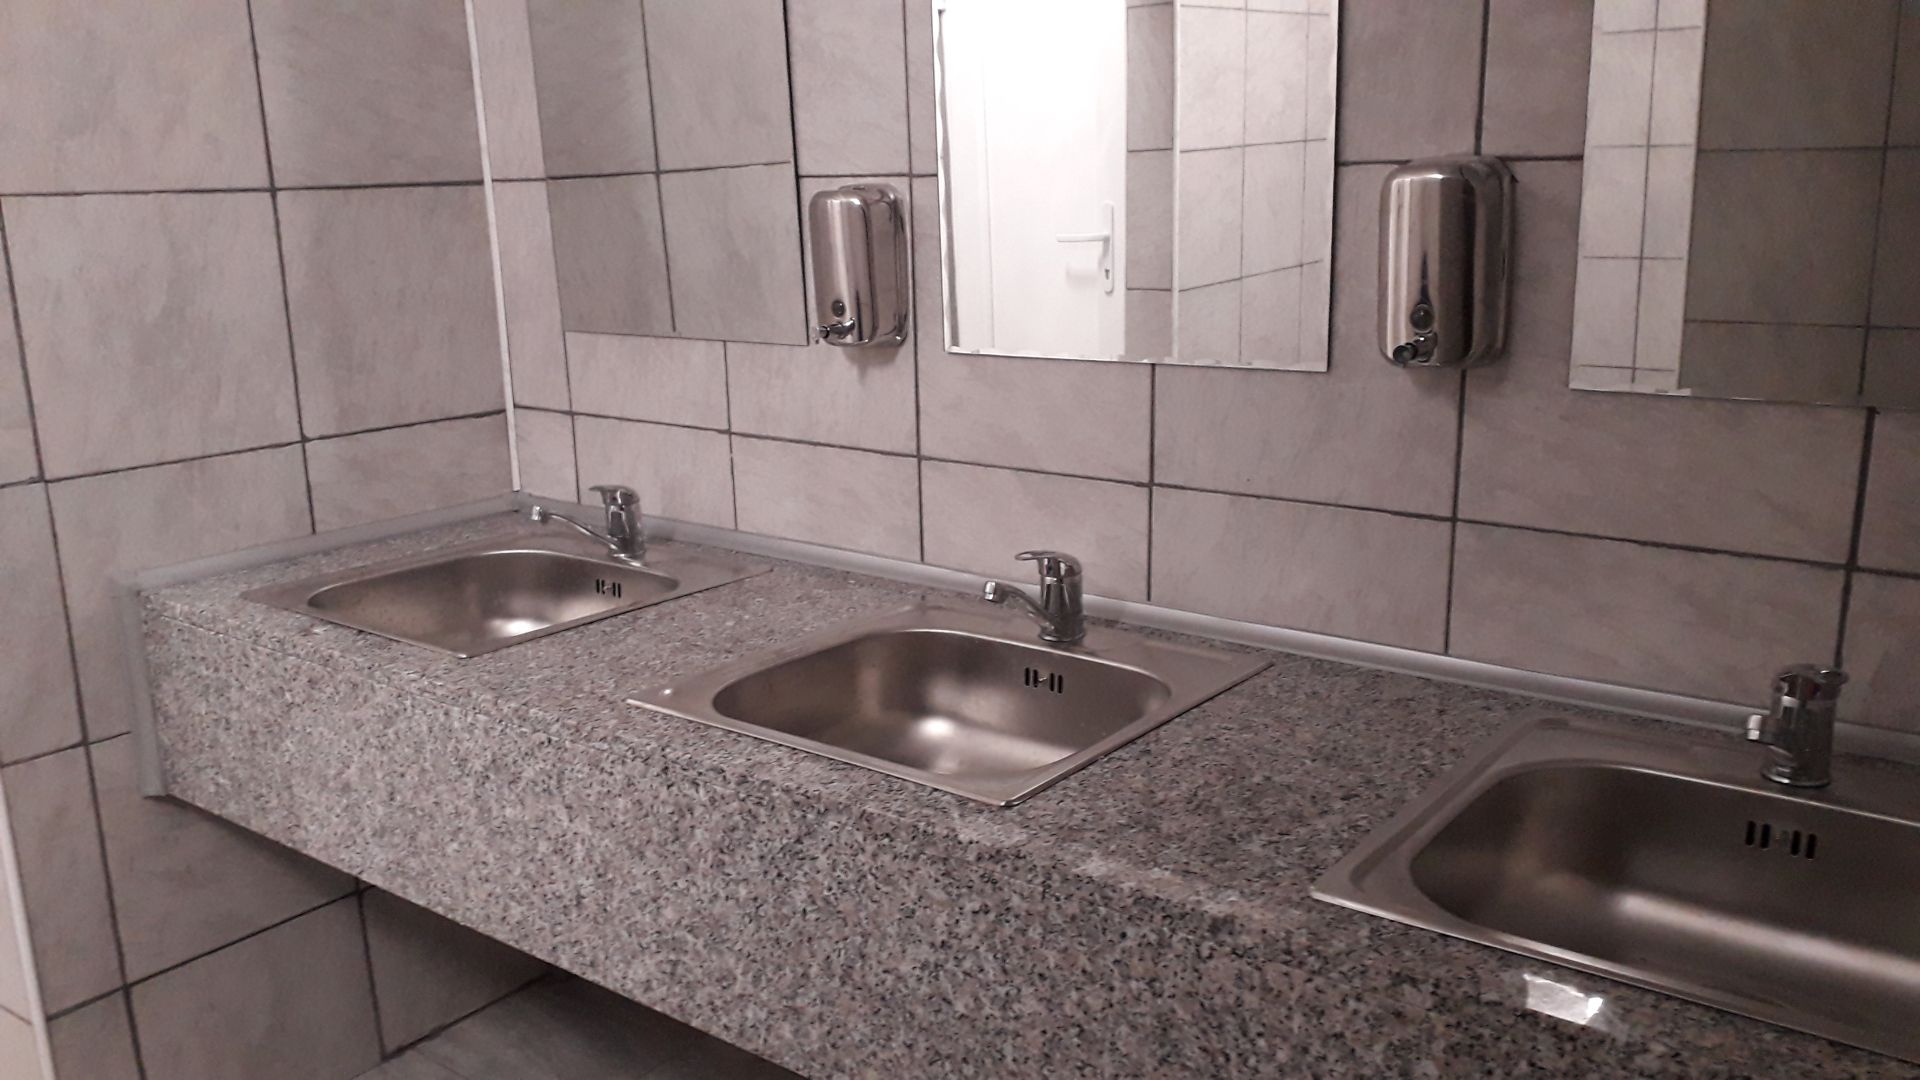 FOTO: Toaletă publică la Gara Oradea 07.01.2019